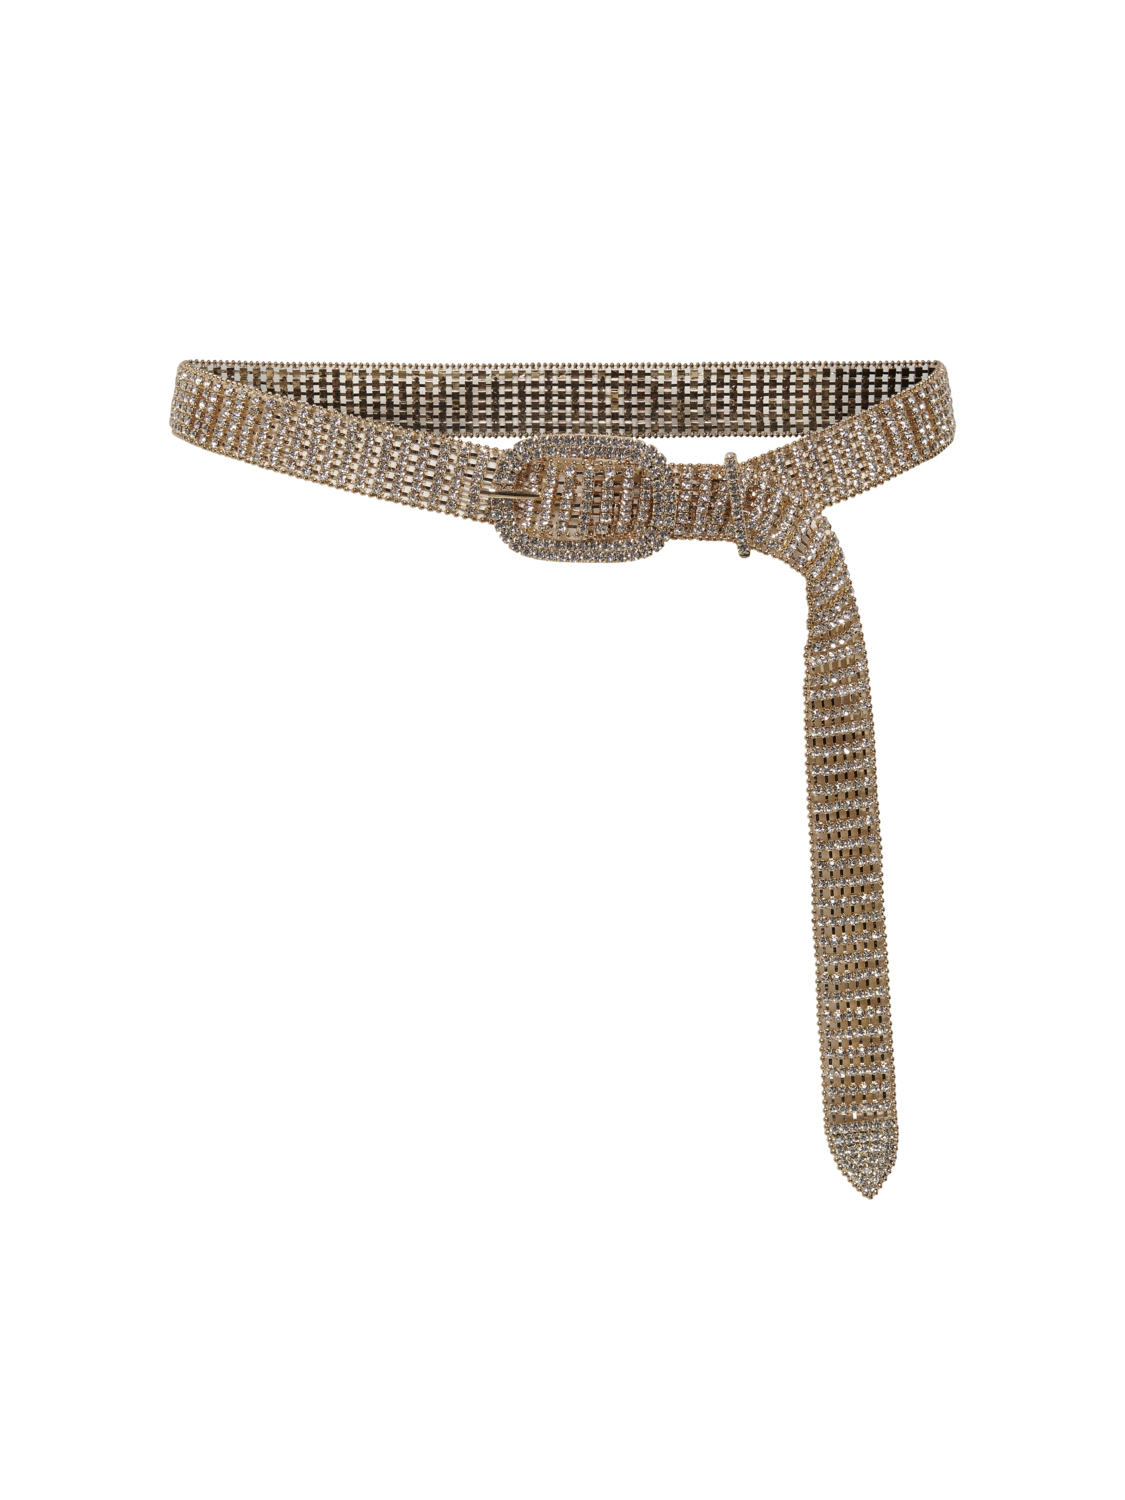 Gitta glass gem embellished belt, GOLD COLOUR, large